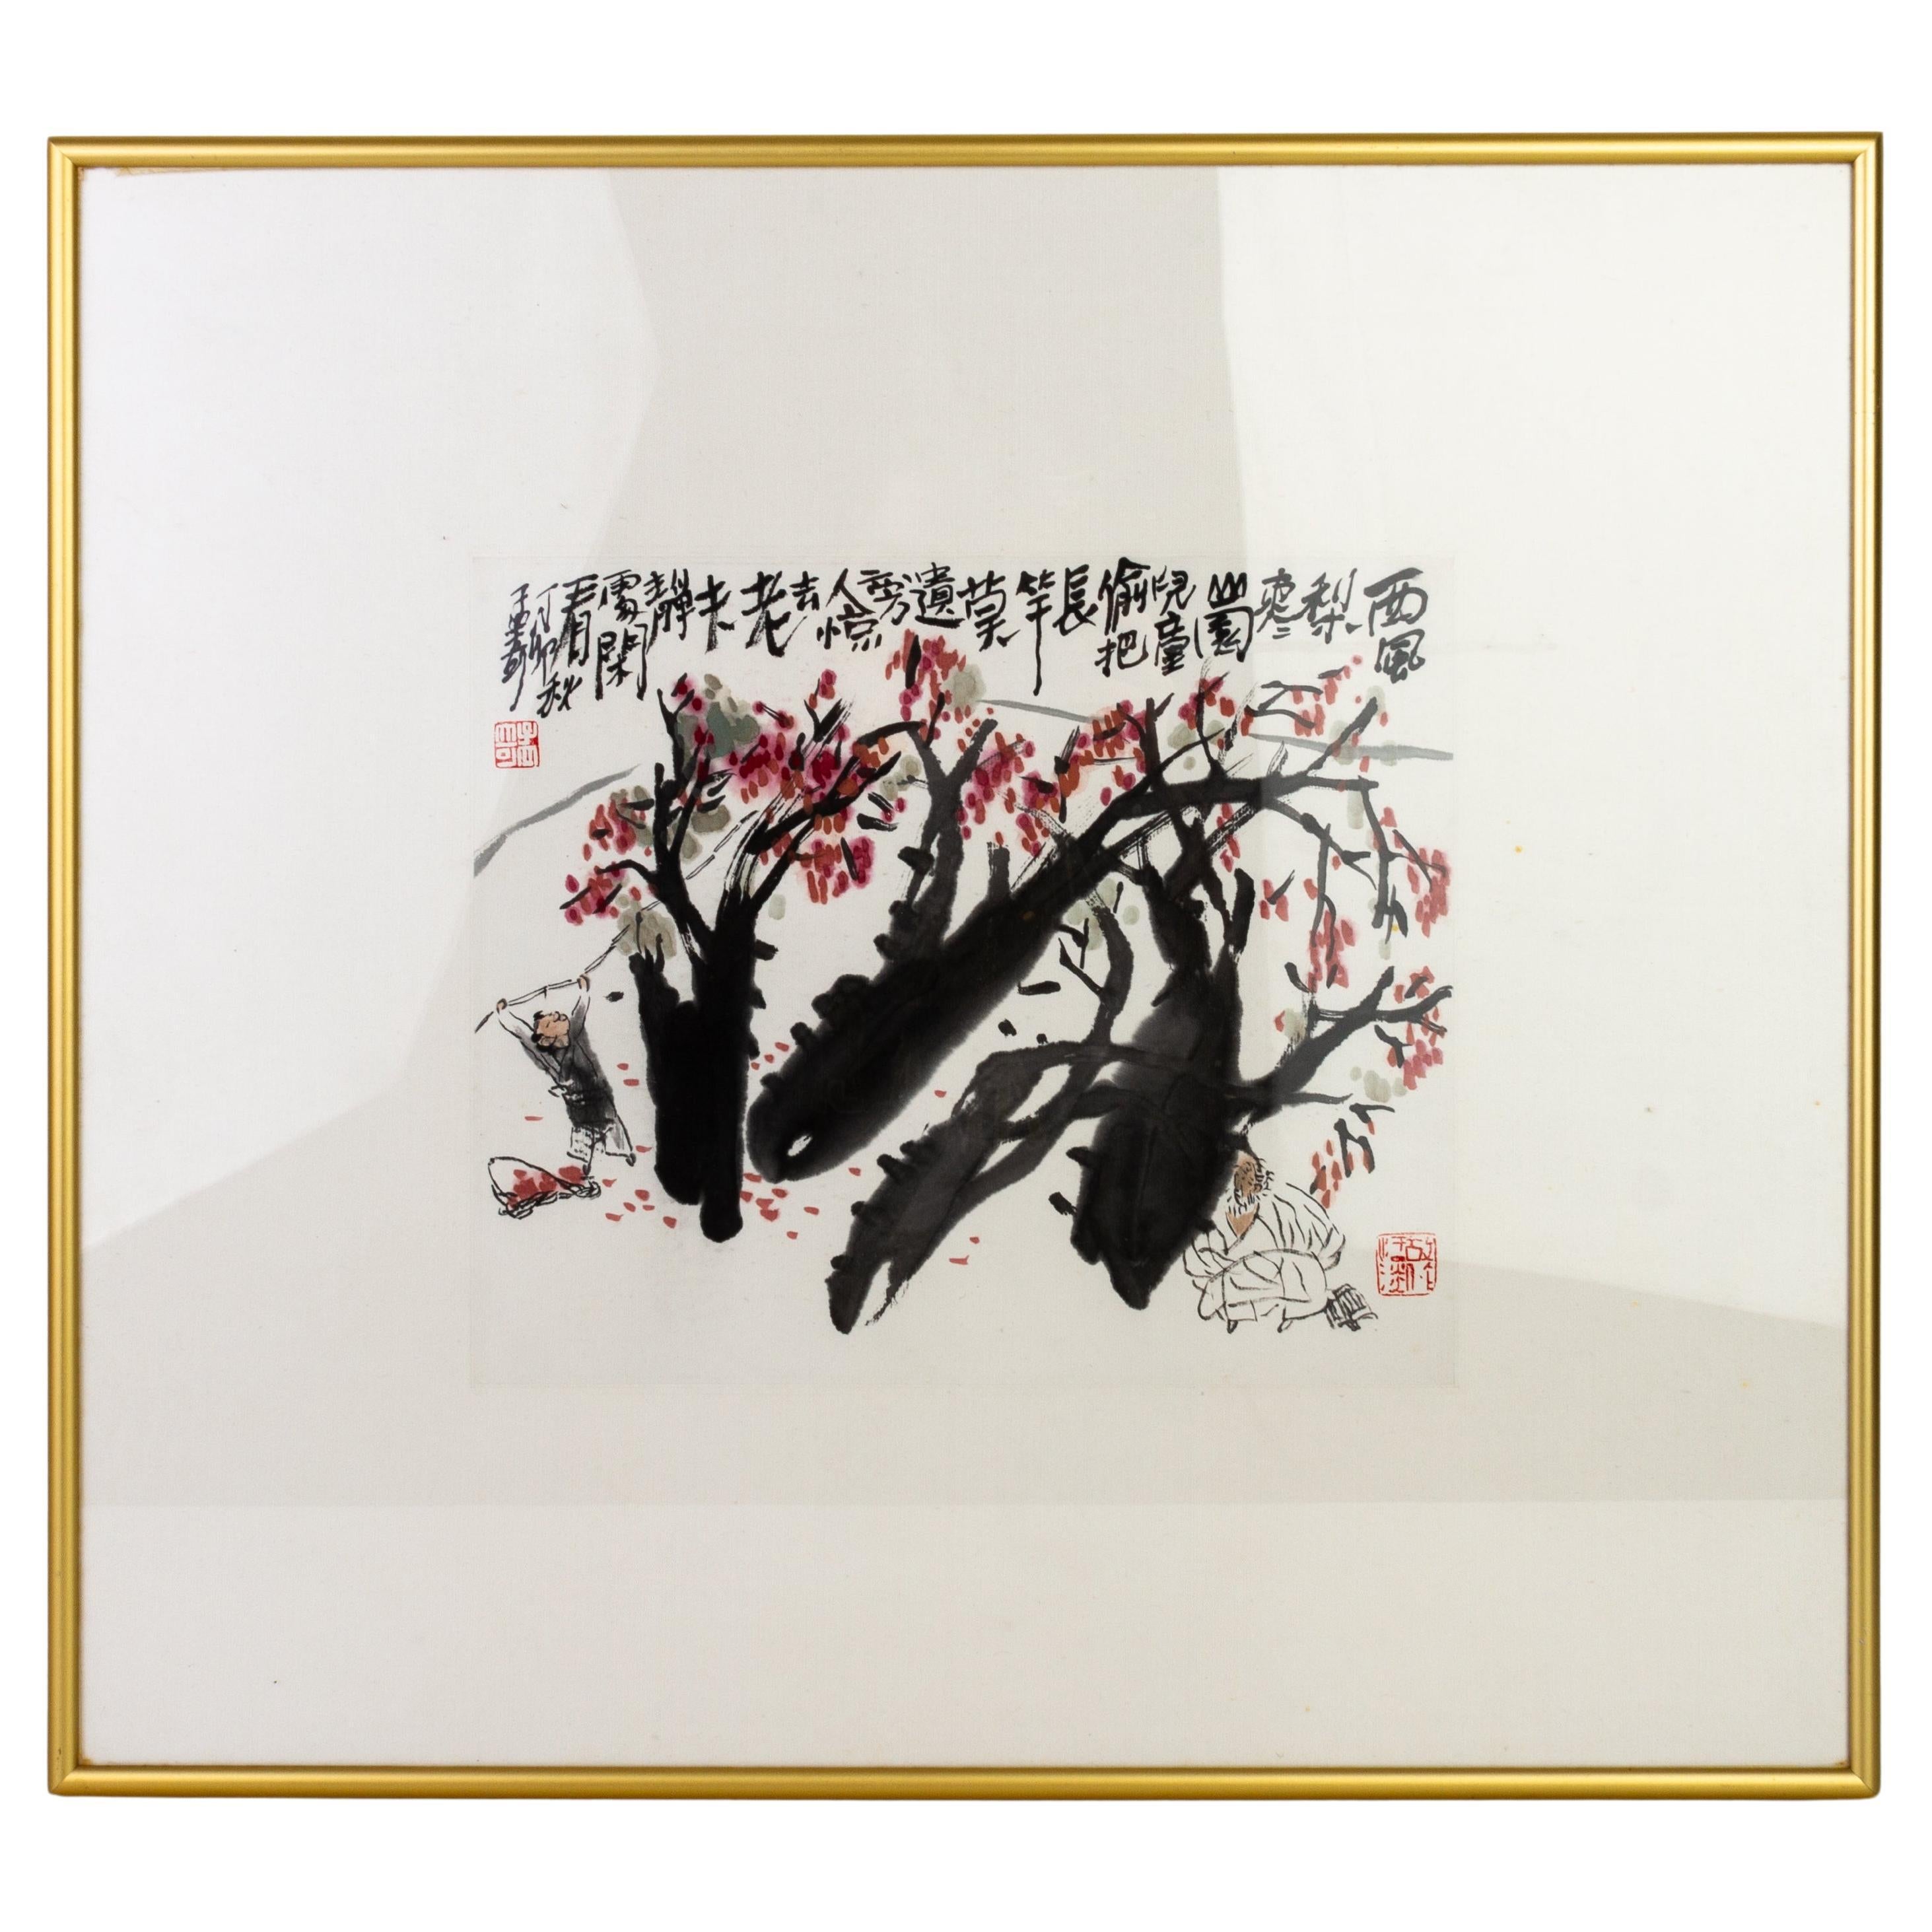 Signé MengQi Wang (né en 1947), Date Orchard, 1987, encre et couleur sur papier chinoise 